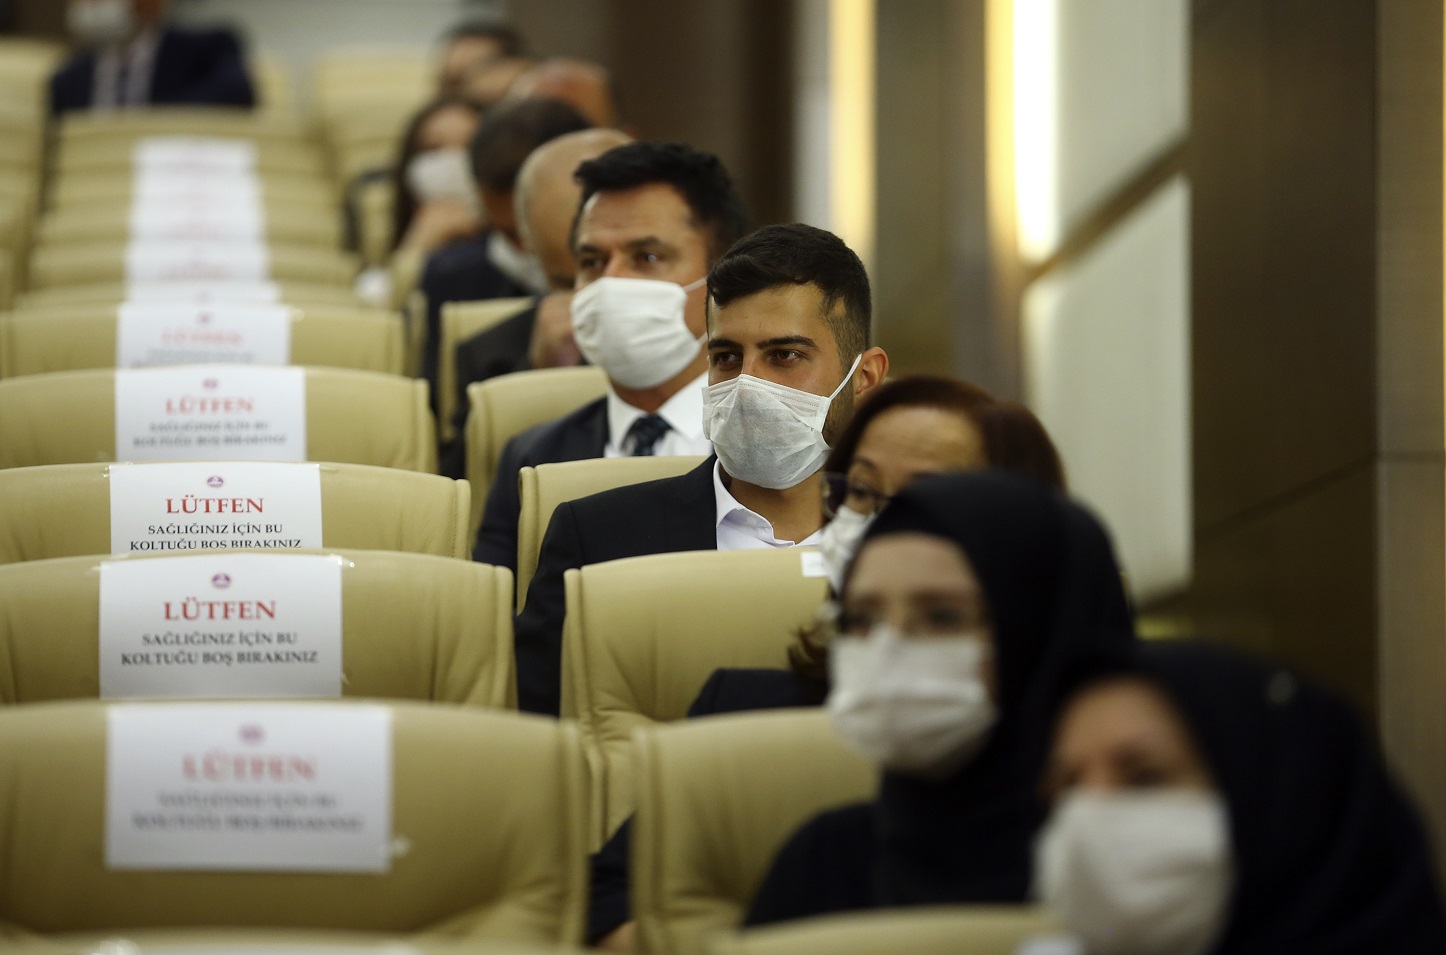 Assentos vazios como precaução contra o novo coronavírus durante a cerimônia de juramento do recém-eleito membro do Tribunal Constitucional da Turquia. Foto Halil Sagirkaya/Anadolu Agency